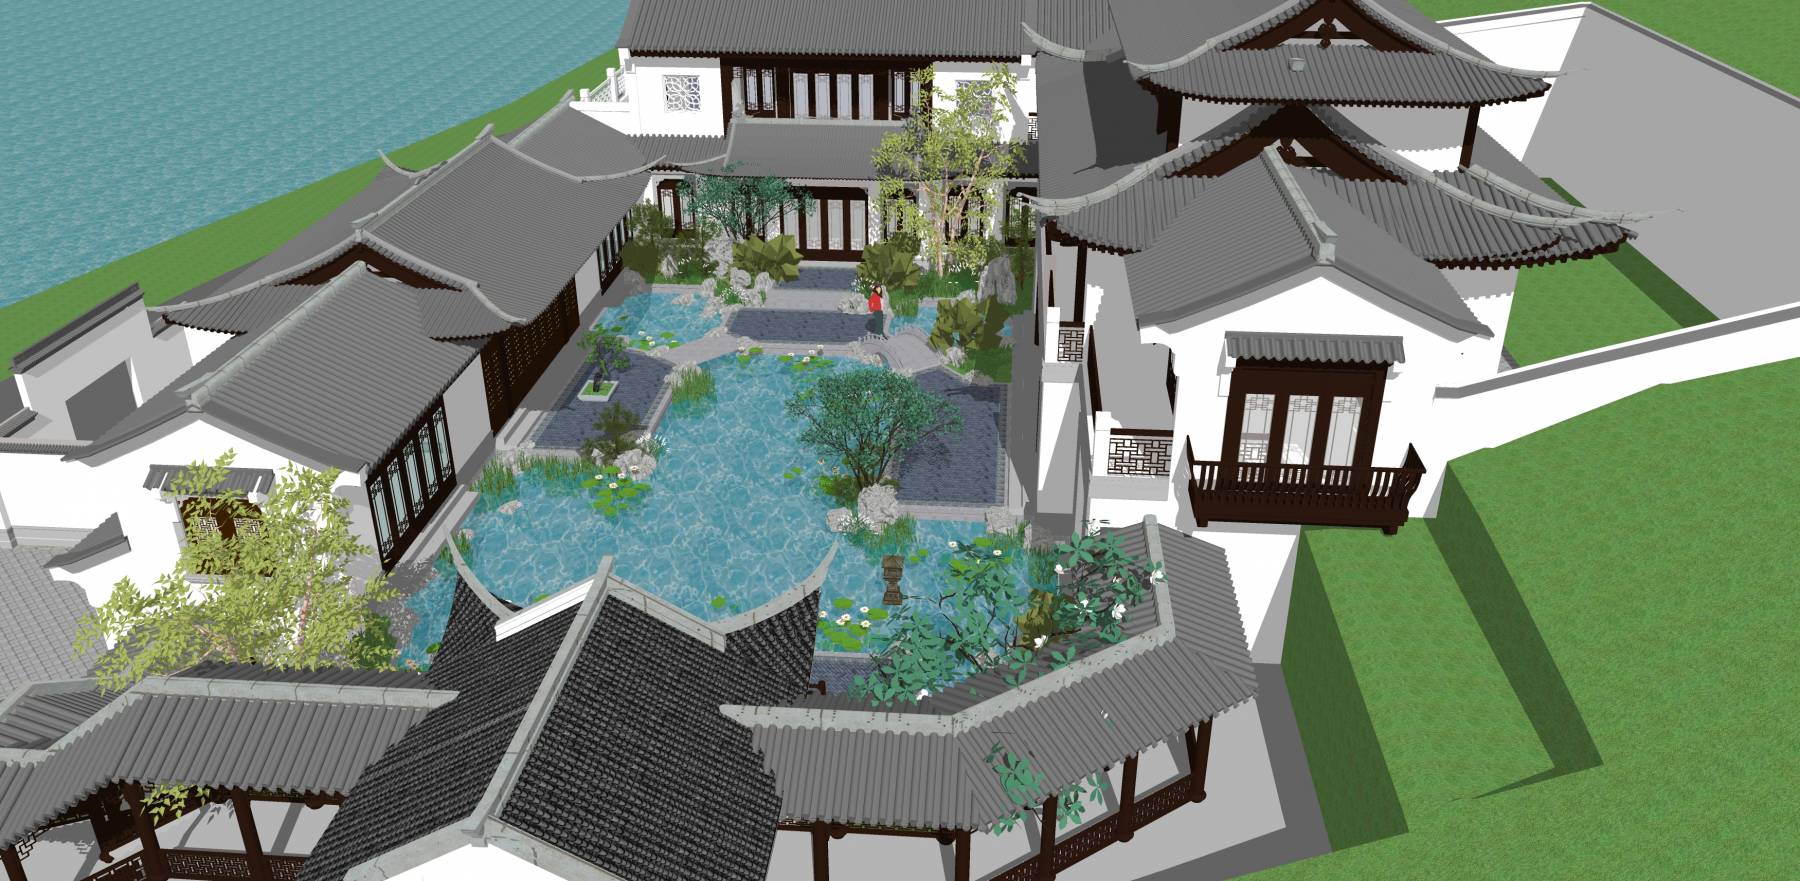 中式民居,川西风格别墅max模型,中式建筑,建筑模型,3d模型下载,3D模型网,maya模型免费下载,摩尔网